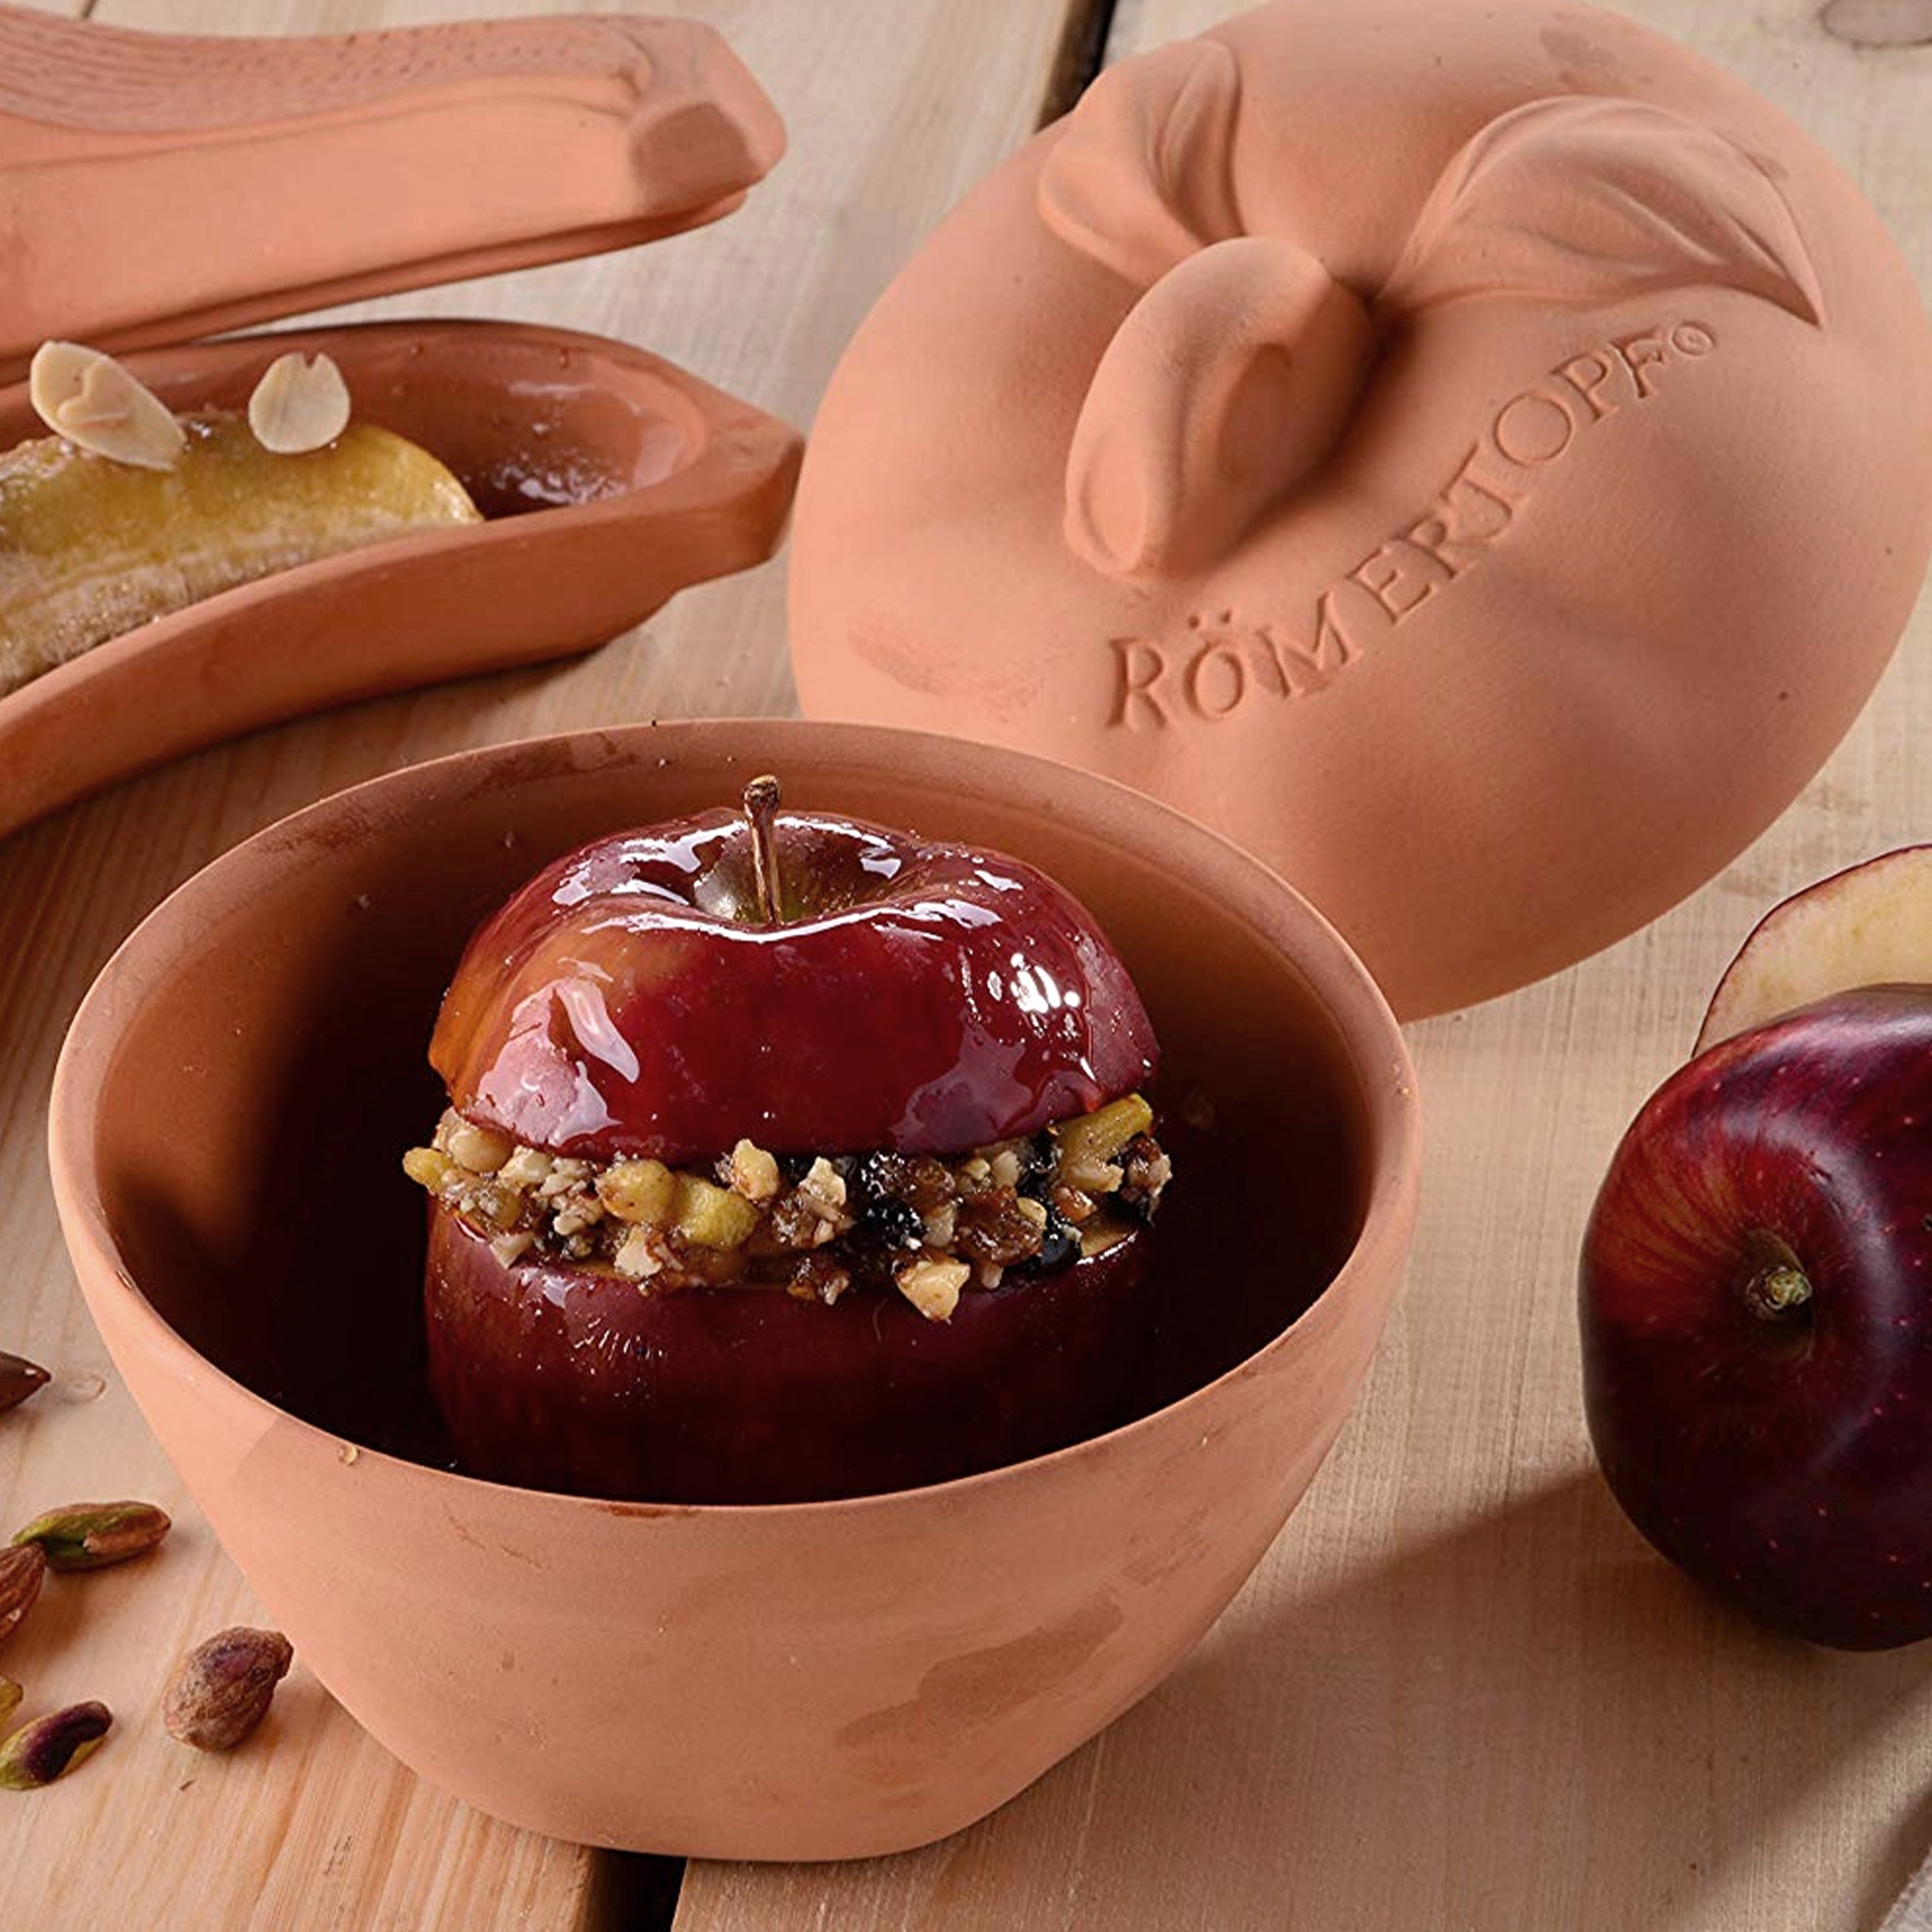 Römertopf - Baked Apple